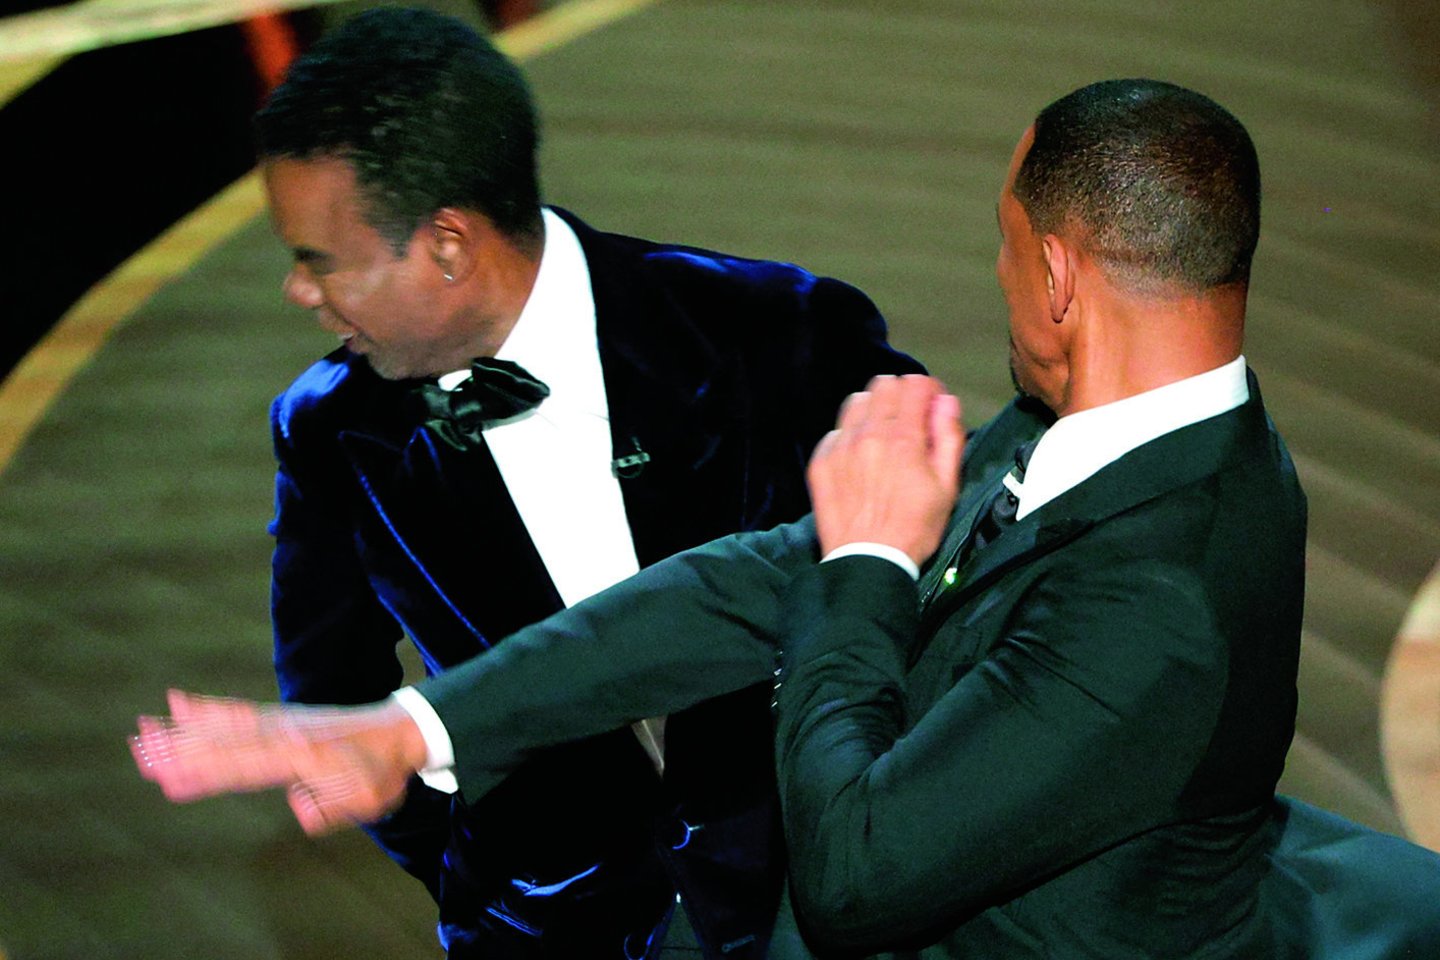 Visi „Oskarų“ ceremonijos stebėtojai matė, kaip W.Smithas trenkė antausį Ch.Rockui už nekorektišką pokštą.